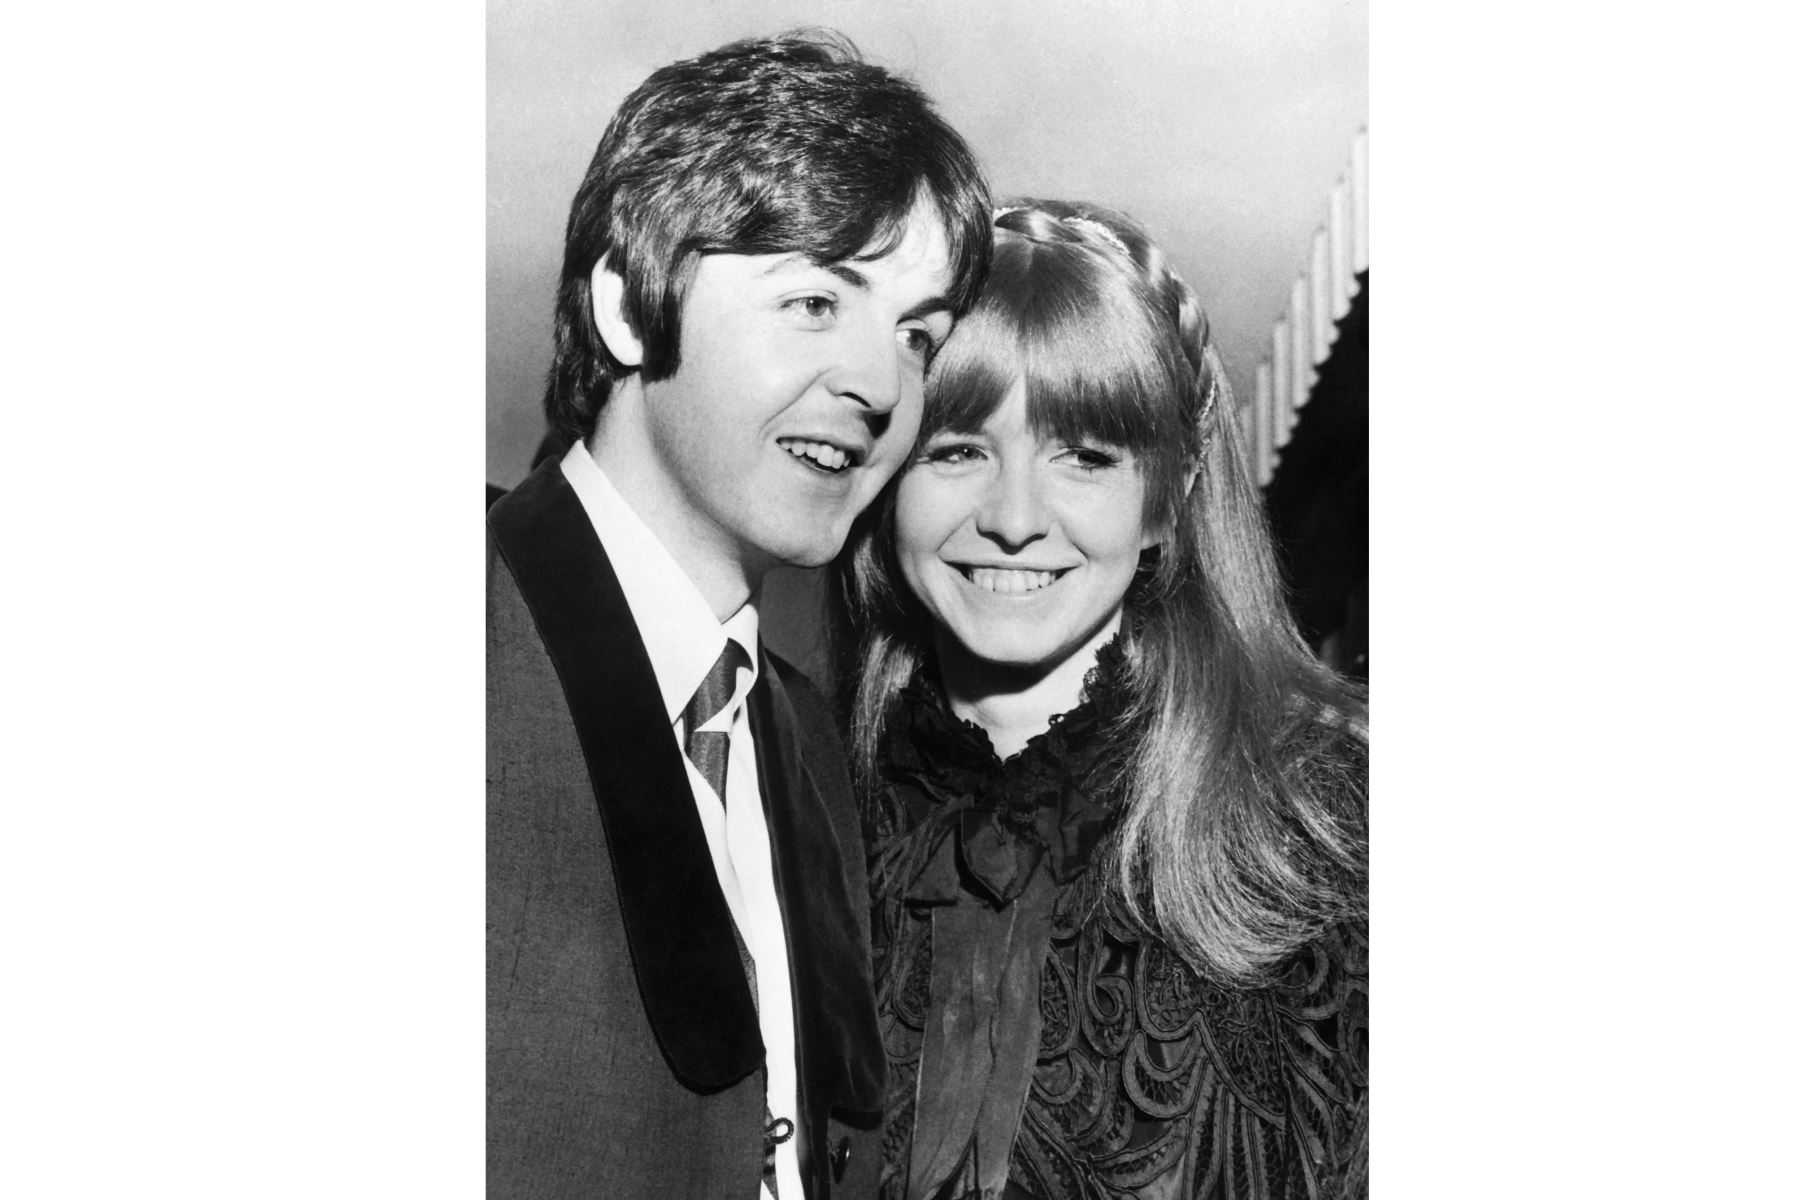 El cantante británico Paul McCartney de la banda The Beatles y su compañera la actriz Jane Asher posan el 5 de enero de 1968 en Londres.
Foto: AFP